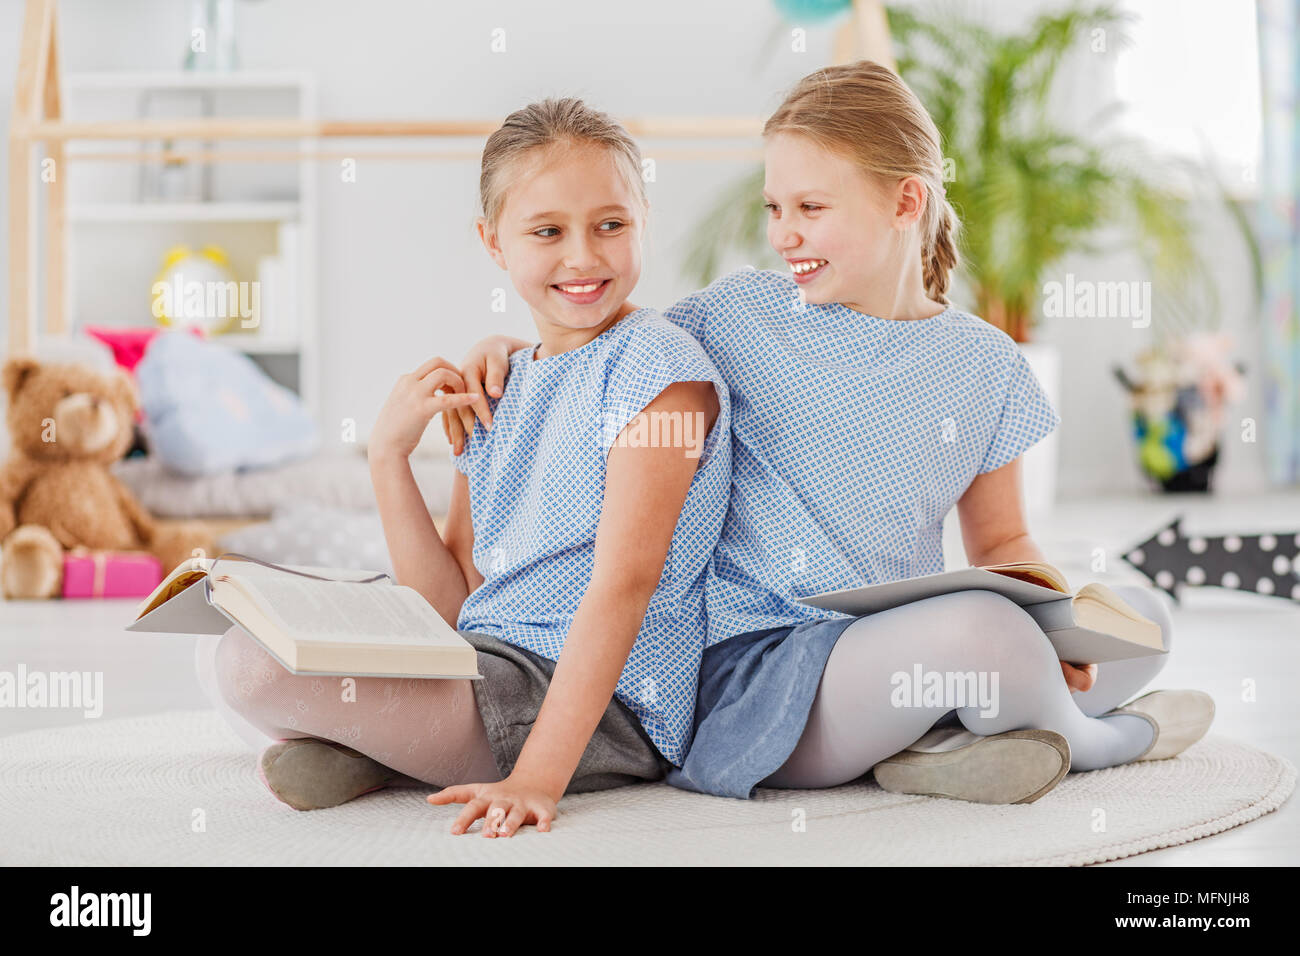 Girl rire avec un bras autour de l'épaule de sa sœur, assise sur un tapis blanc et lire ensemble Banque D'Images